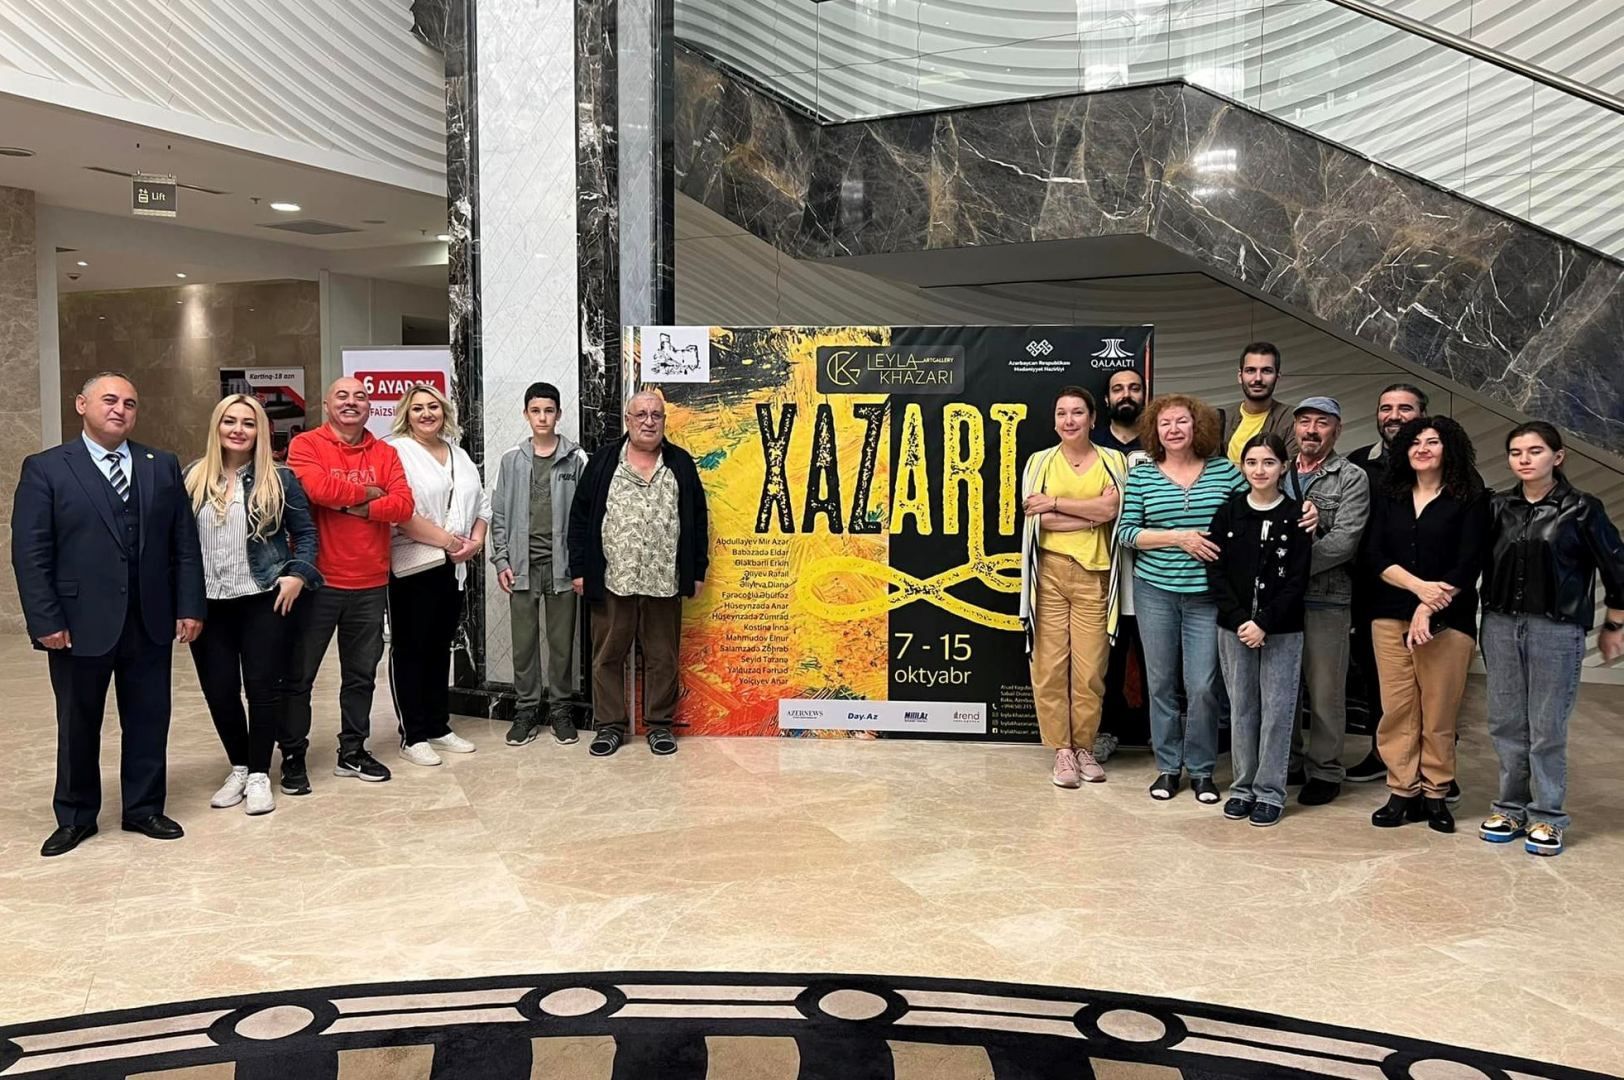 XAZART art symposium opens in Qalaaltı [PHOTO]